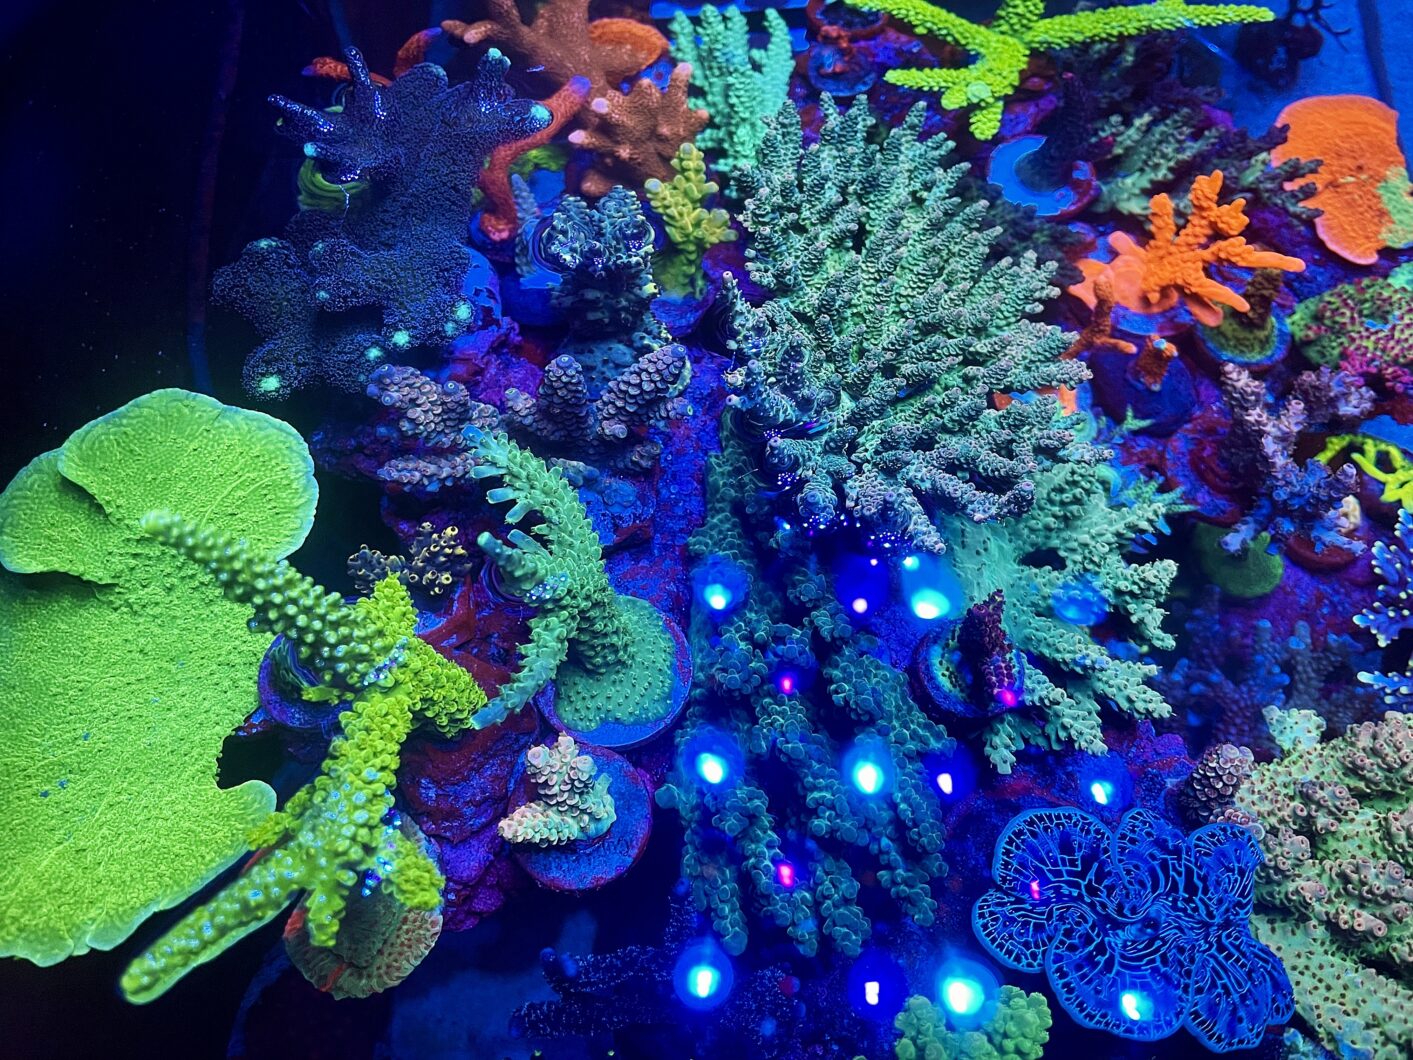 mest-fantastiske-koral-vækst-og-farve